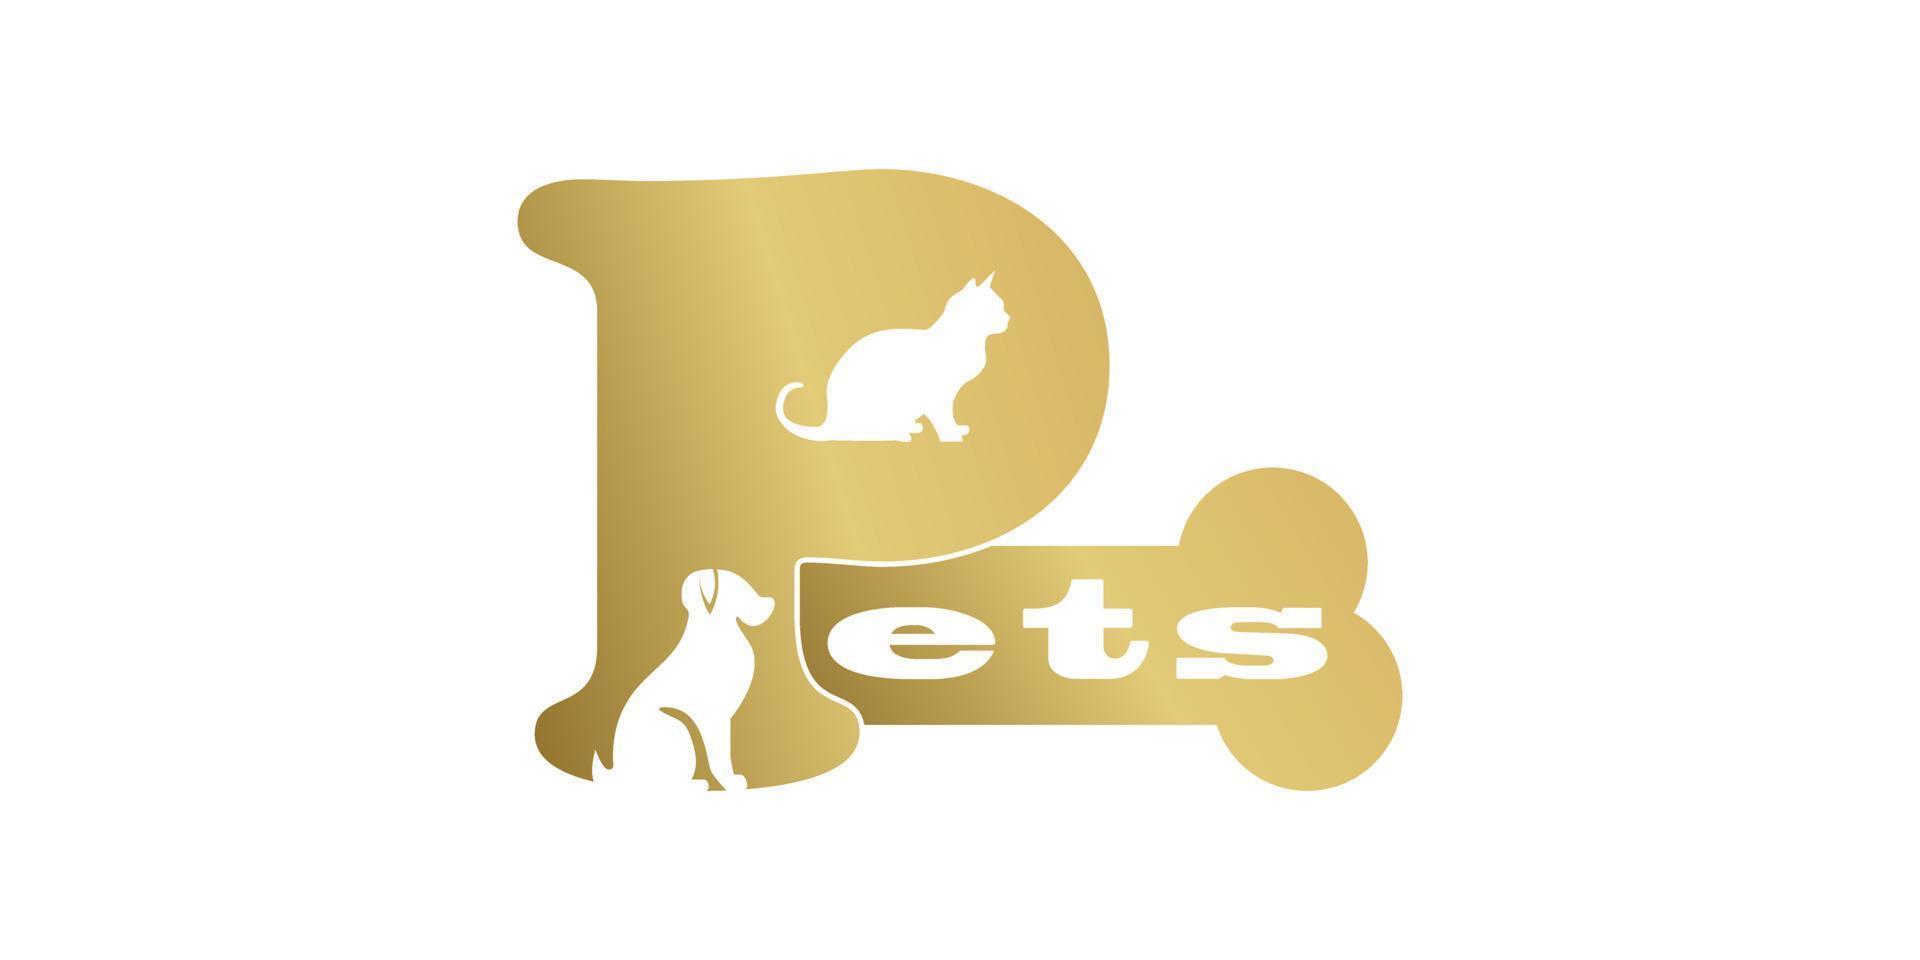 pet shop logo design template with creative concept vector